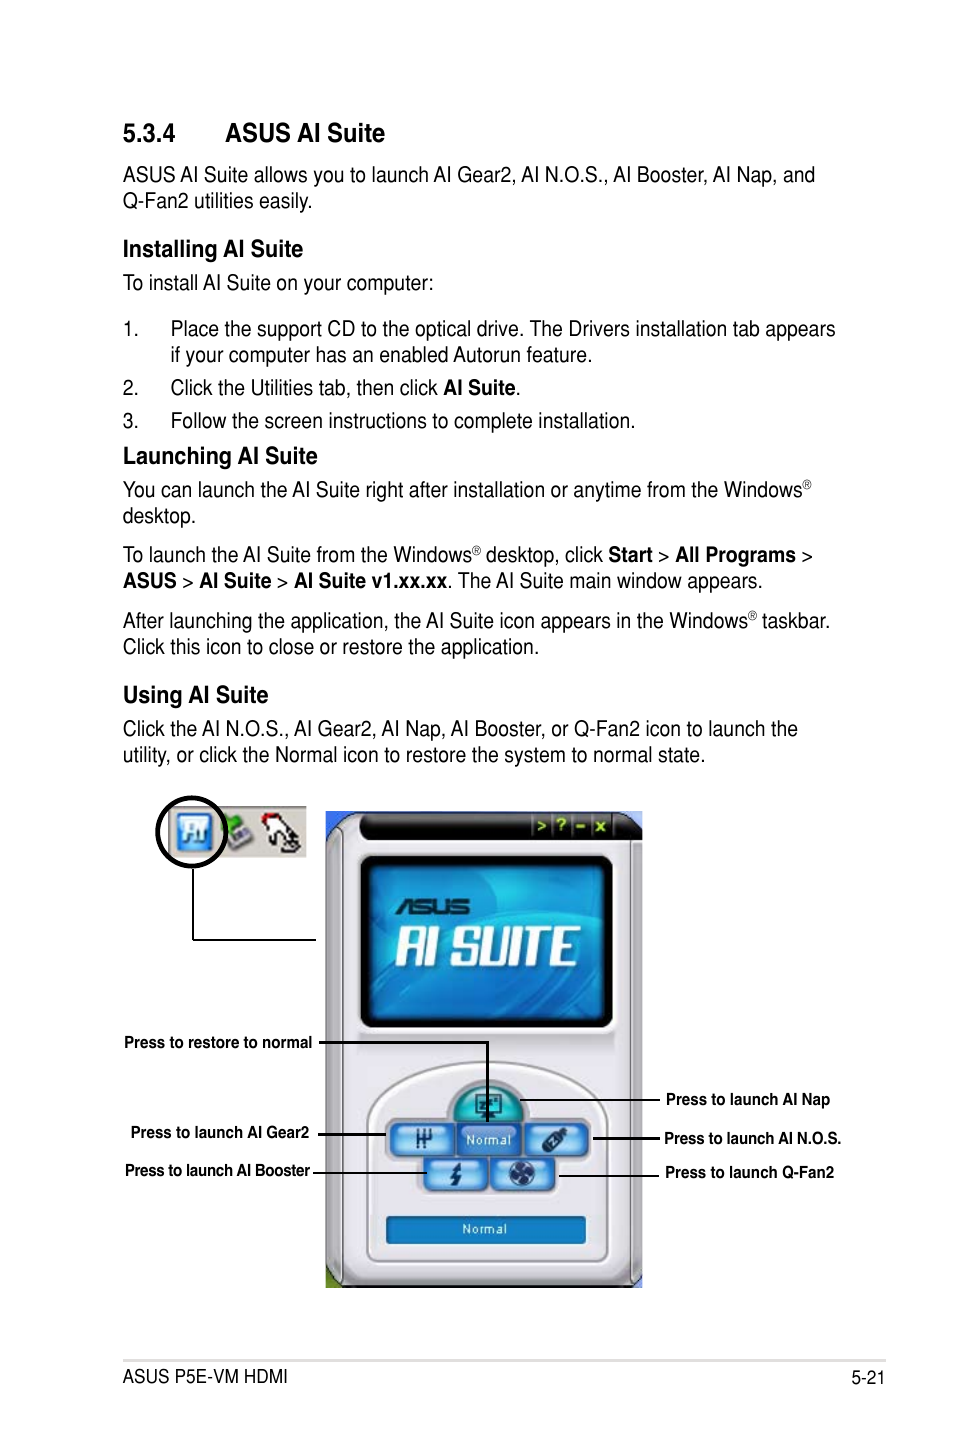 4 asus ai suite, Installing ai suite, Launching ai suite | Asus P5E-VM HDMI  User Manual | Page 125 / 154 | Original mode